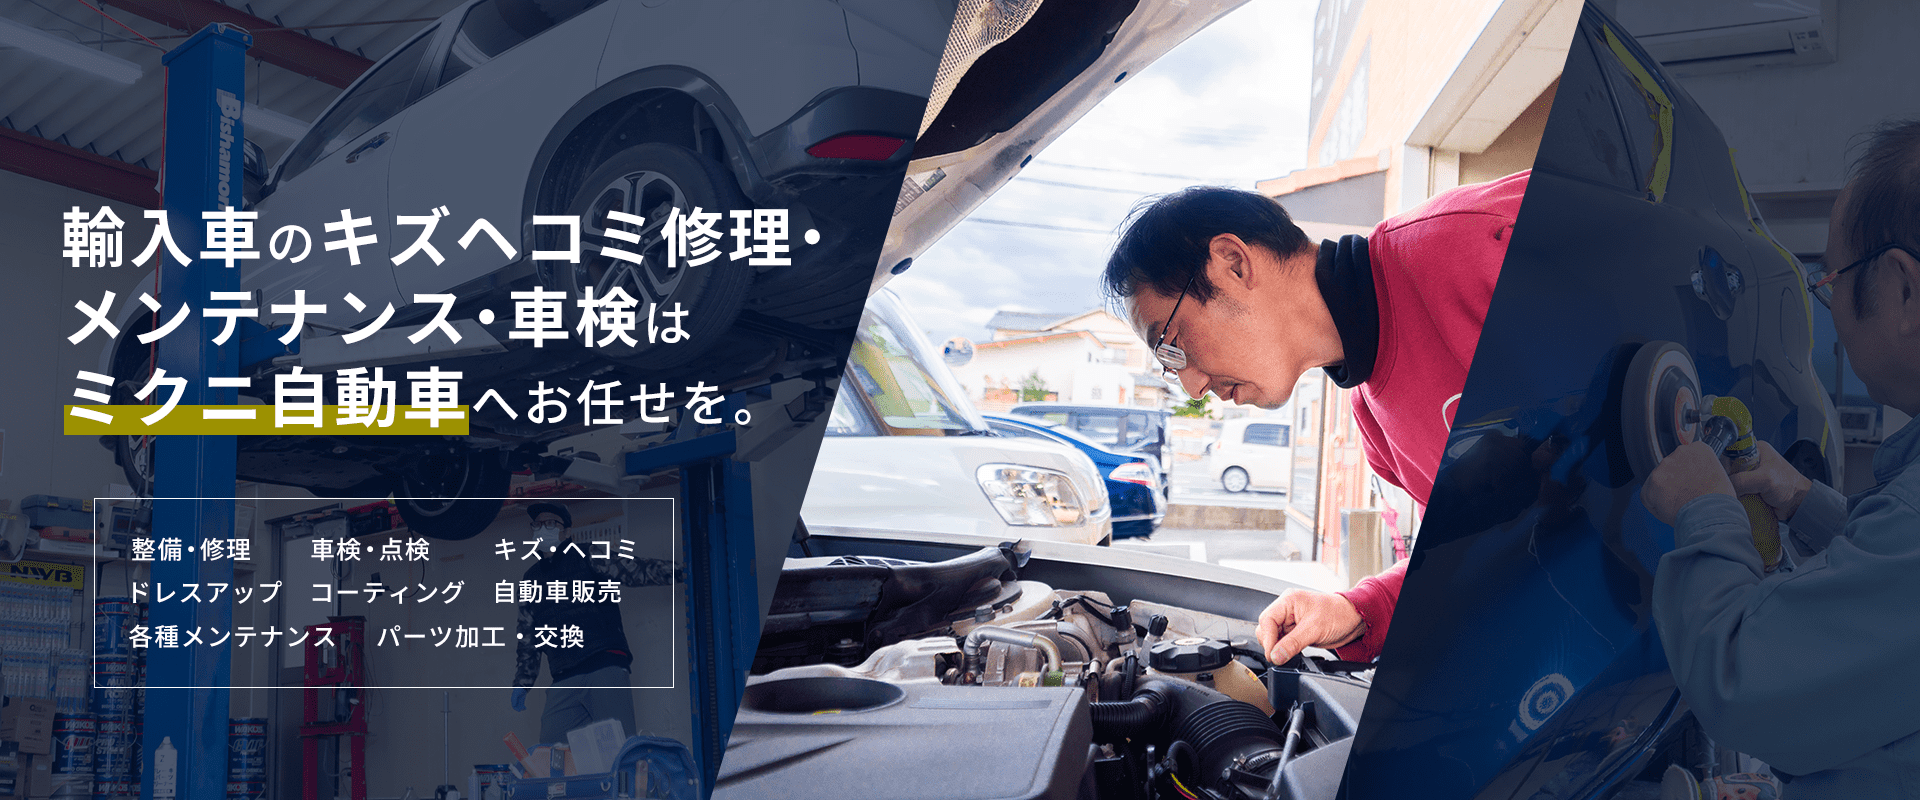 輸入車のキズ・ヘコミ修理・メンテナンス・車検はミクニ自動車へお任せを。